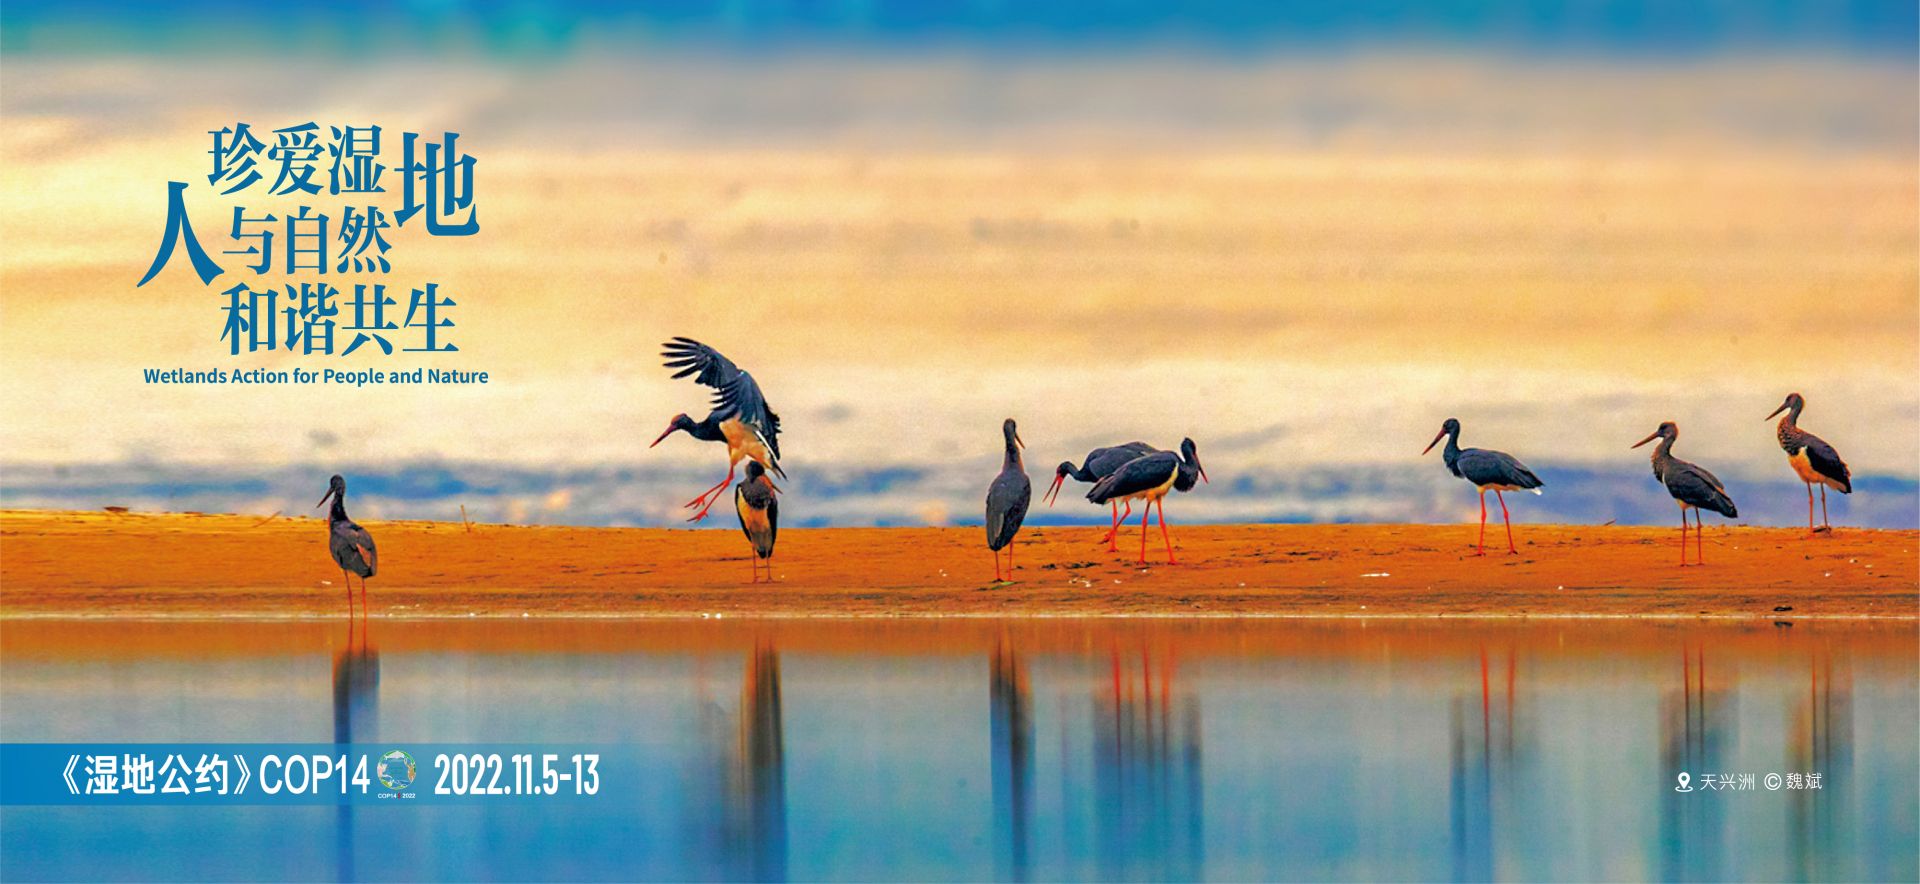 松滋洈水国家湿地公园:湖光山色,候鸟翩飞